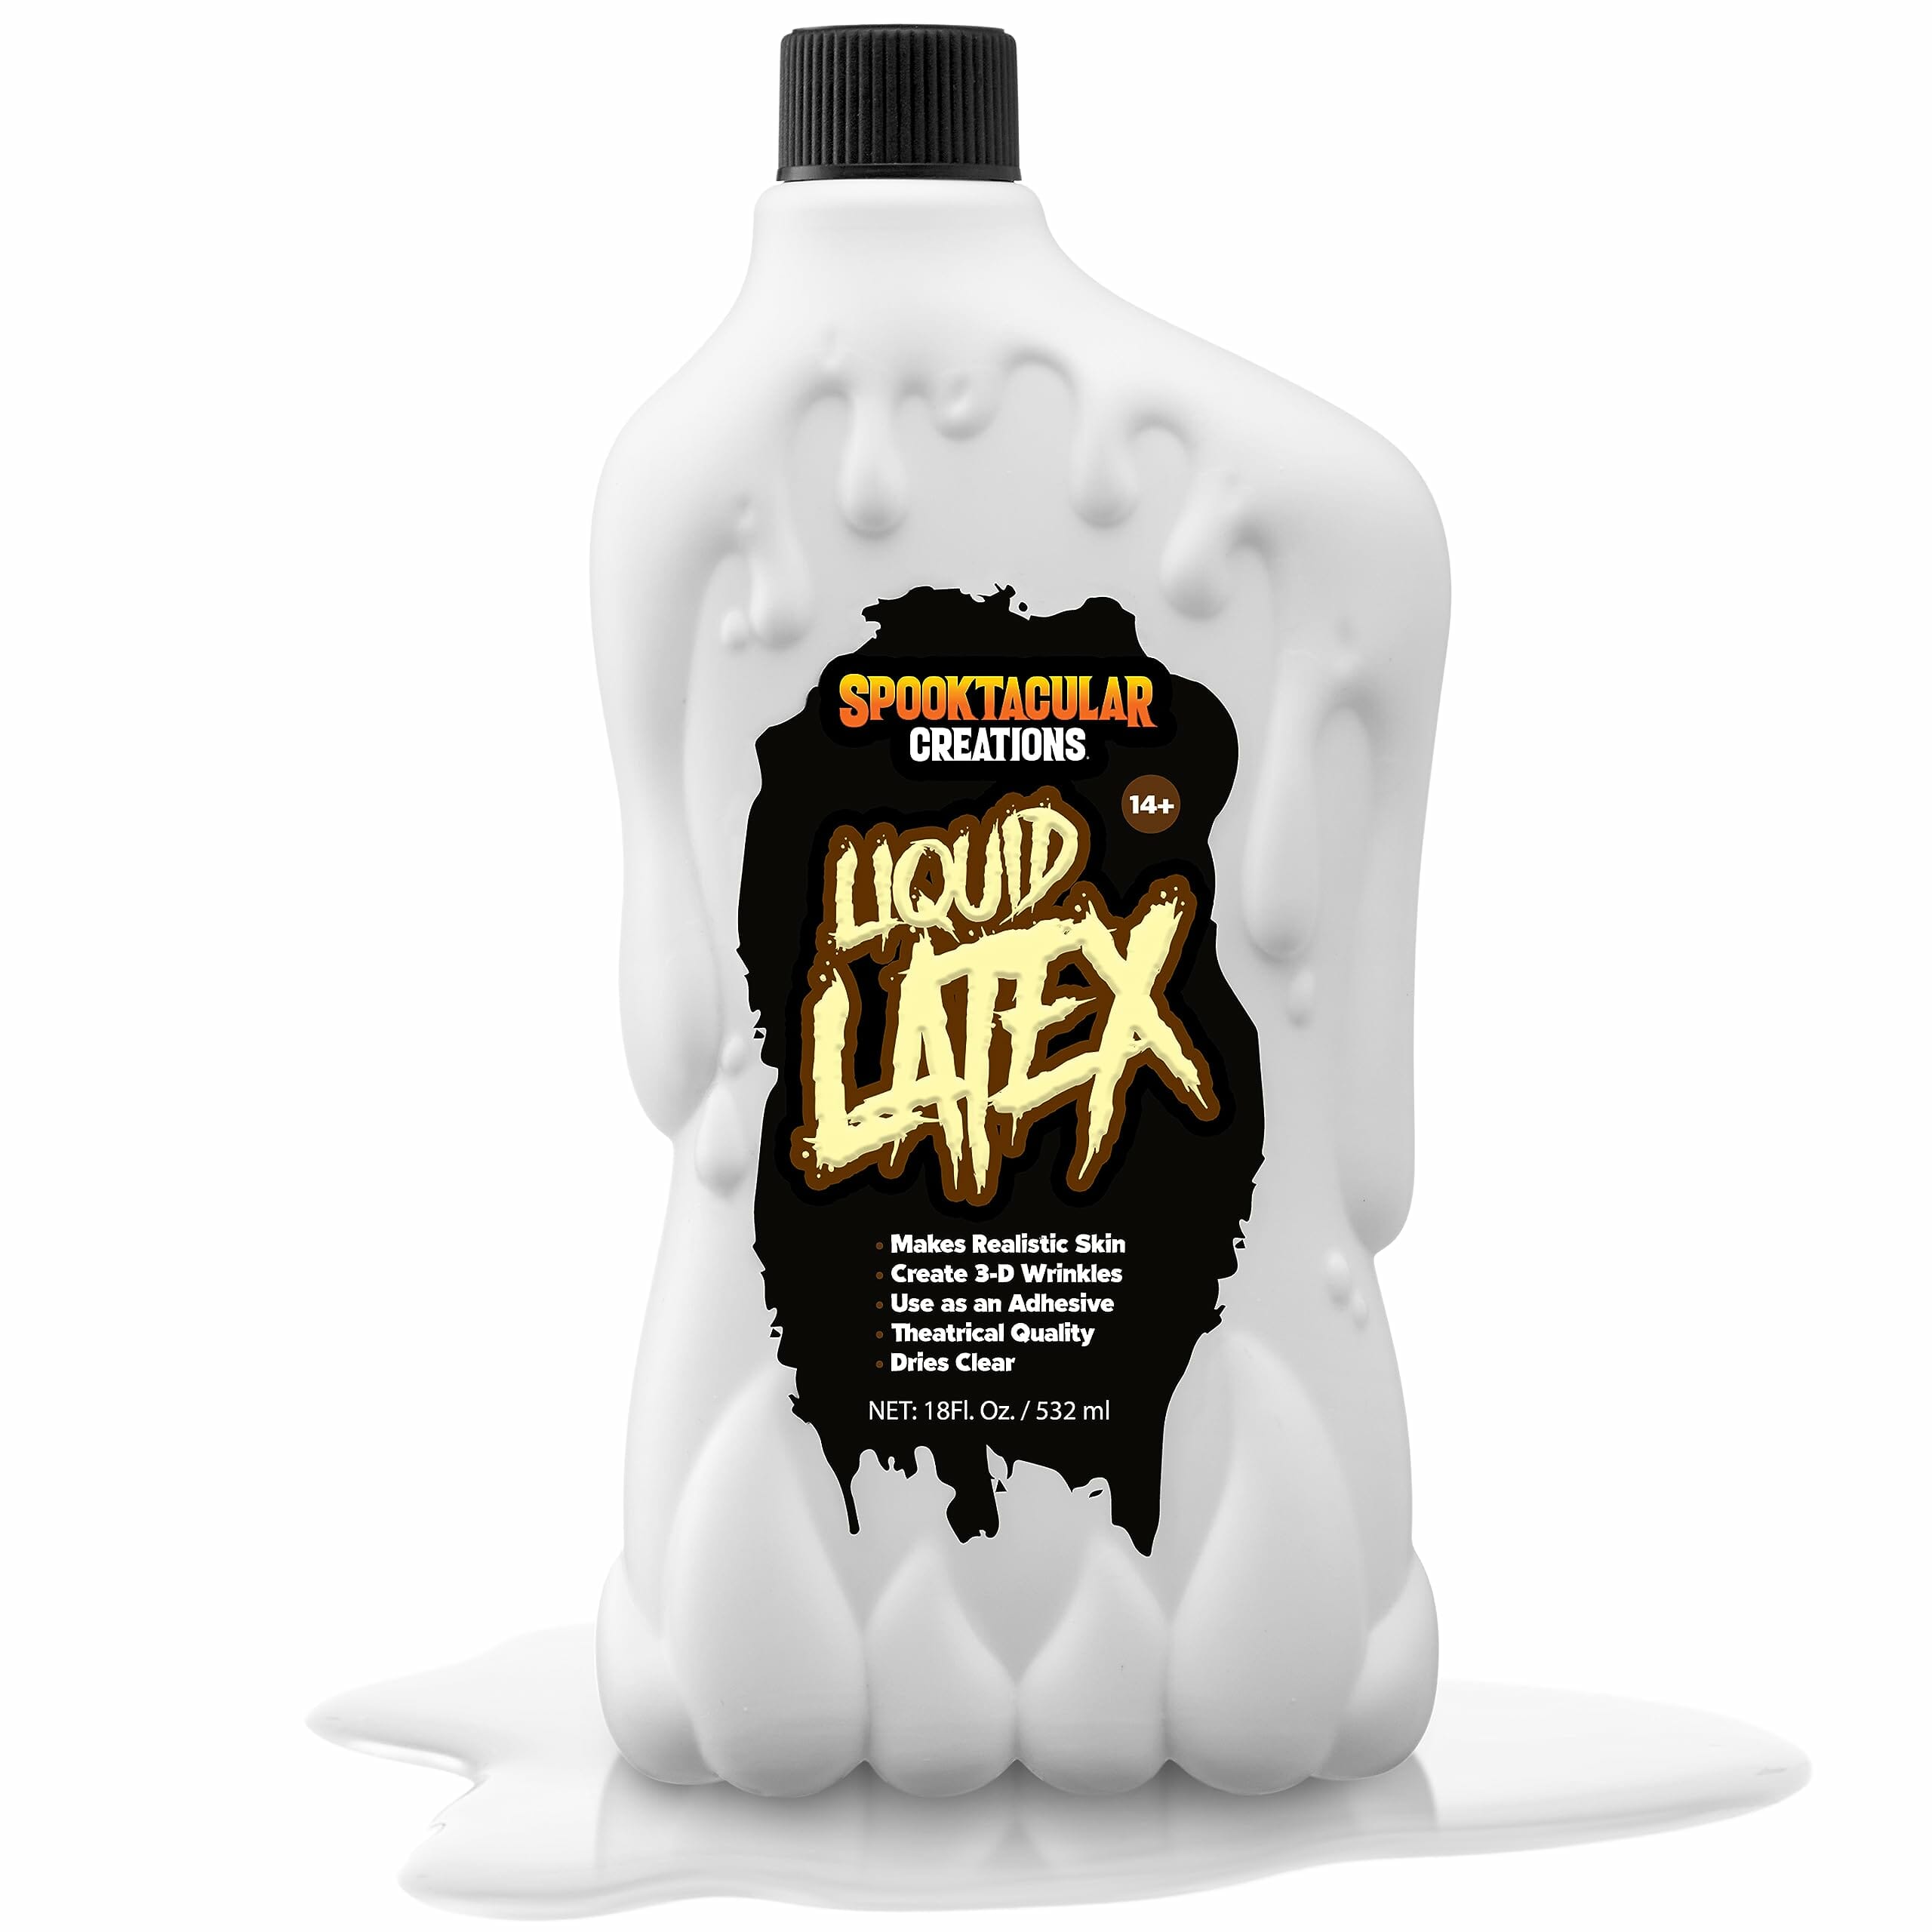 Spooktacular creations liquid latex